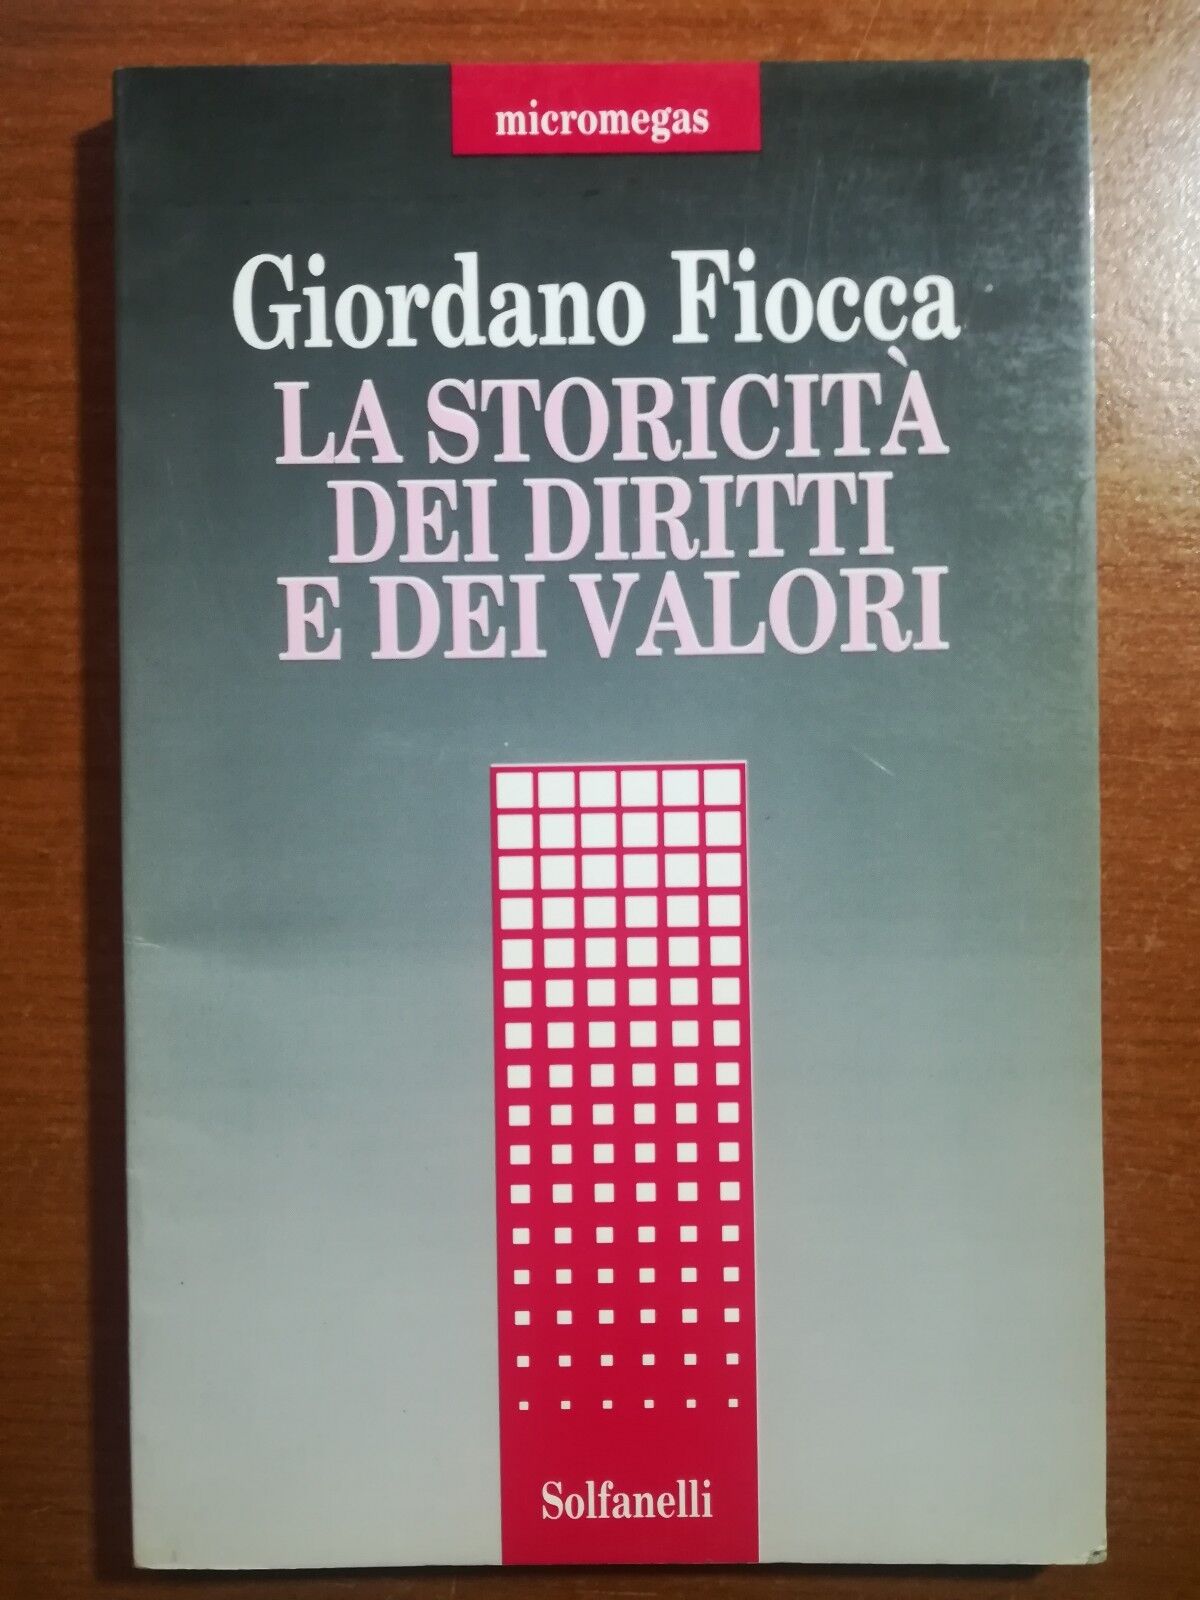 La storicit? dei diritti e dei valori - Giordano Fiocca - Solfanelli -1994 - M